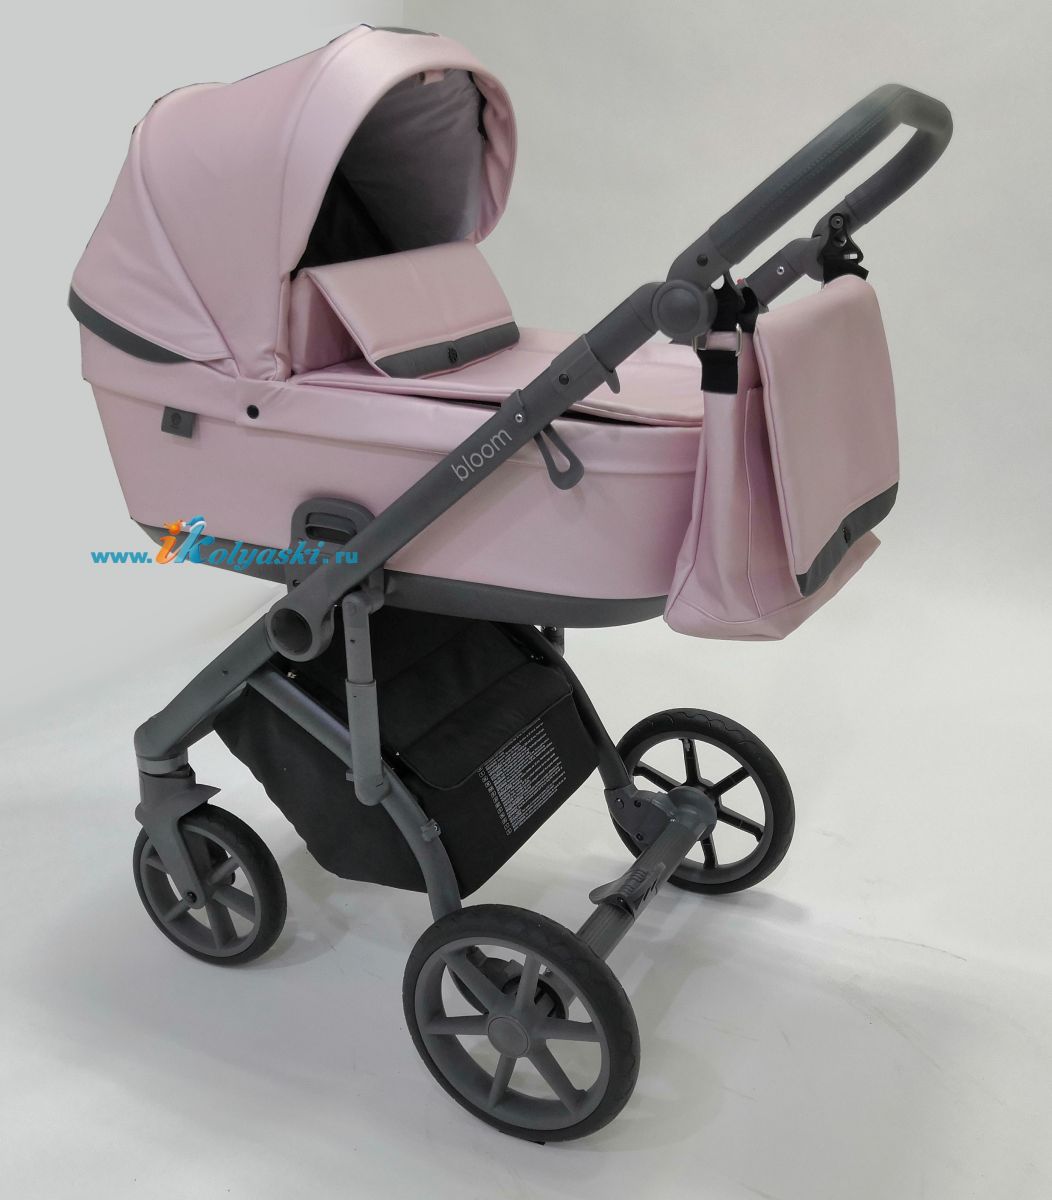 Roan Bloom 3 в 1 детская коляска для новорожденного на гелиевых бескамерных поворотных колесах с прогулочным блоком и автокреслом - купить в интернет-магазине в Москве с доставкой по РФ - цвет  Pink Pearl 